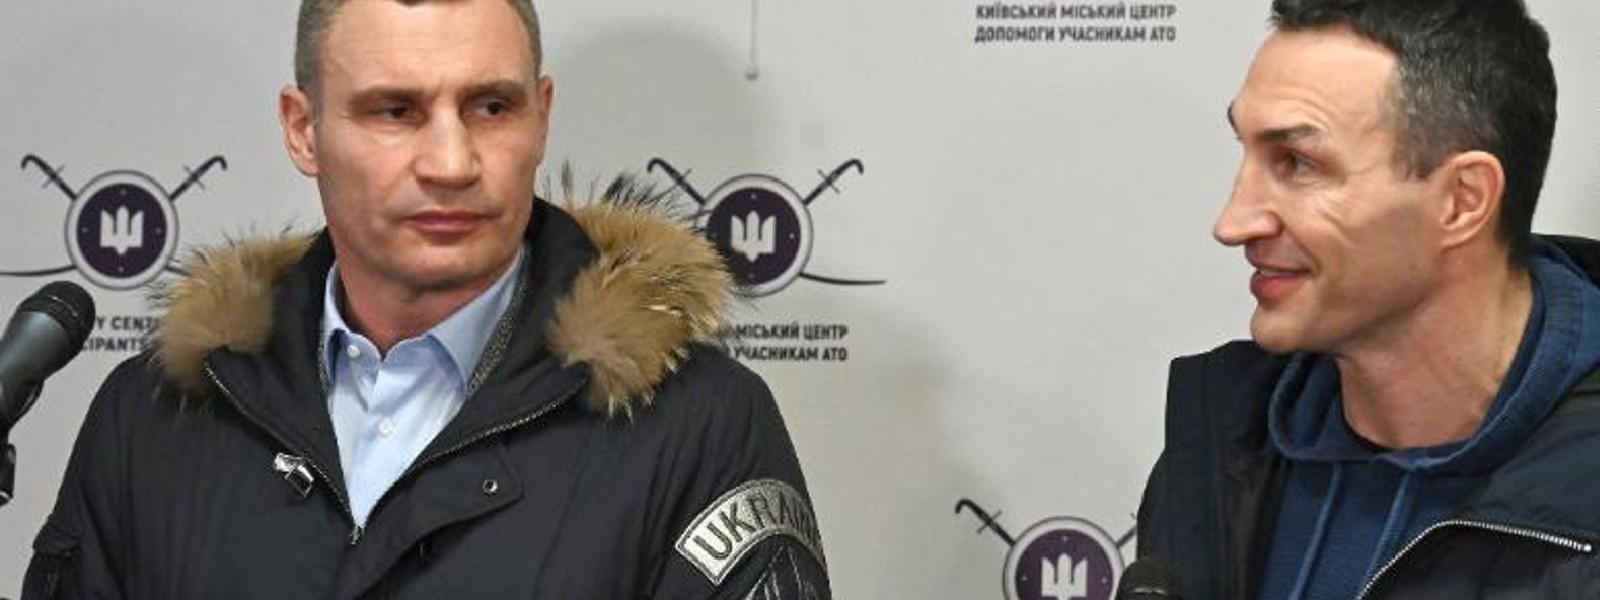 Boxer legends Klitschko Brothers to defend Ukraine